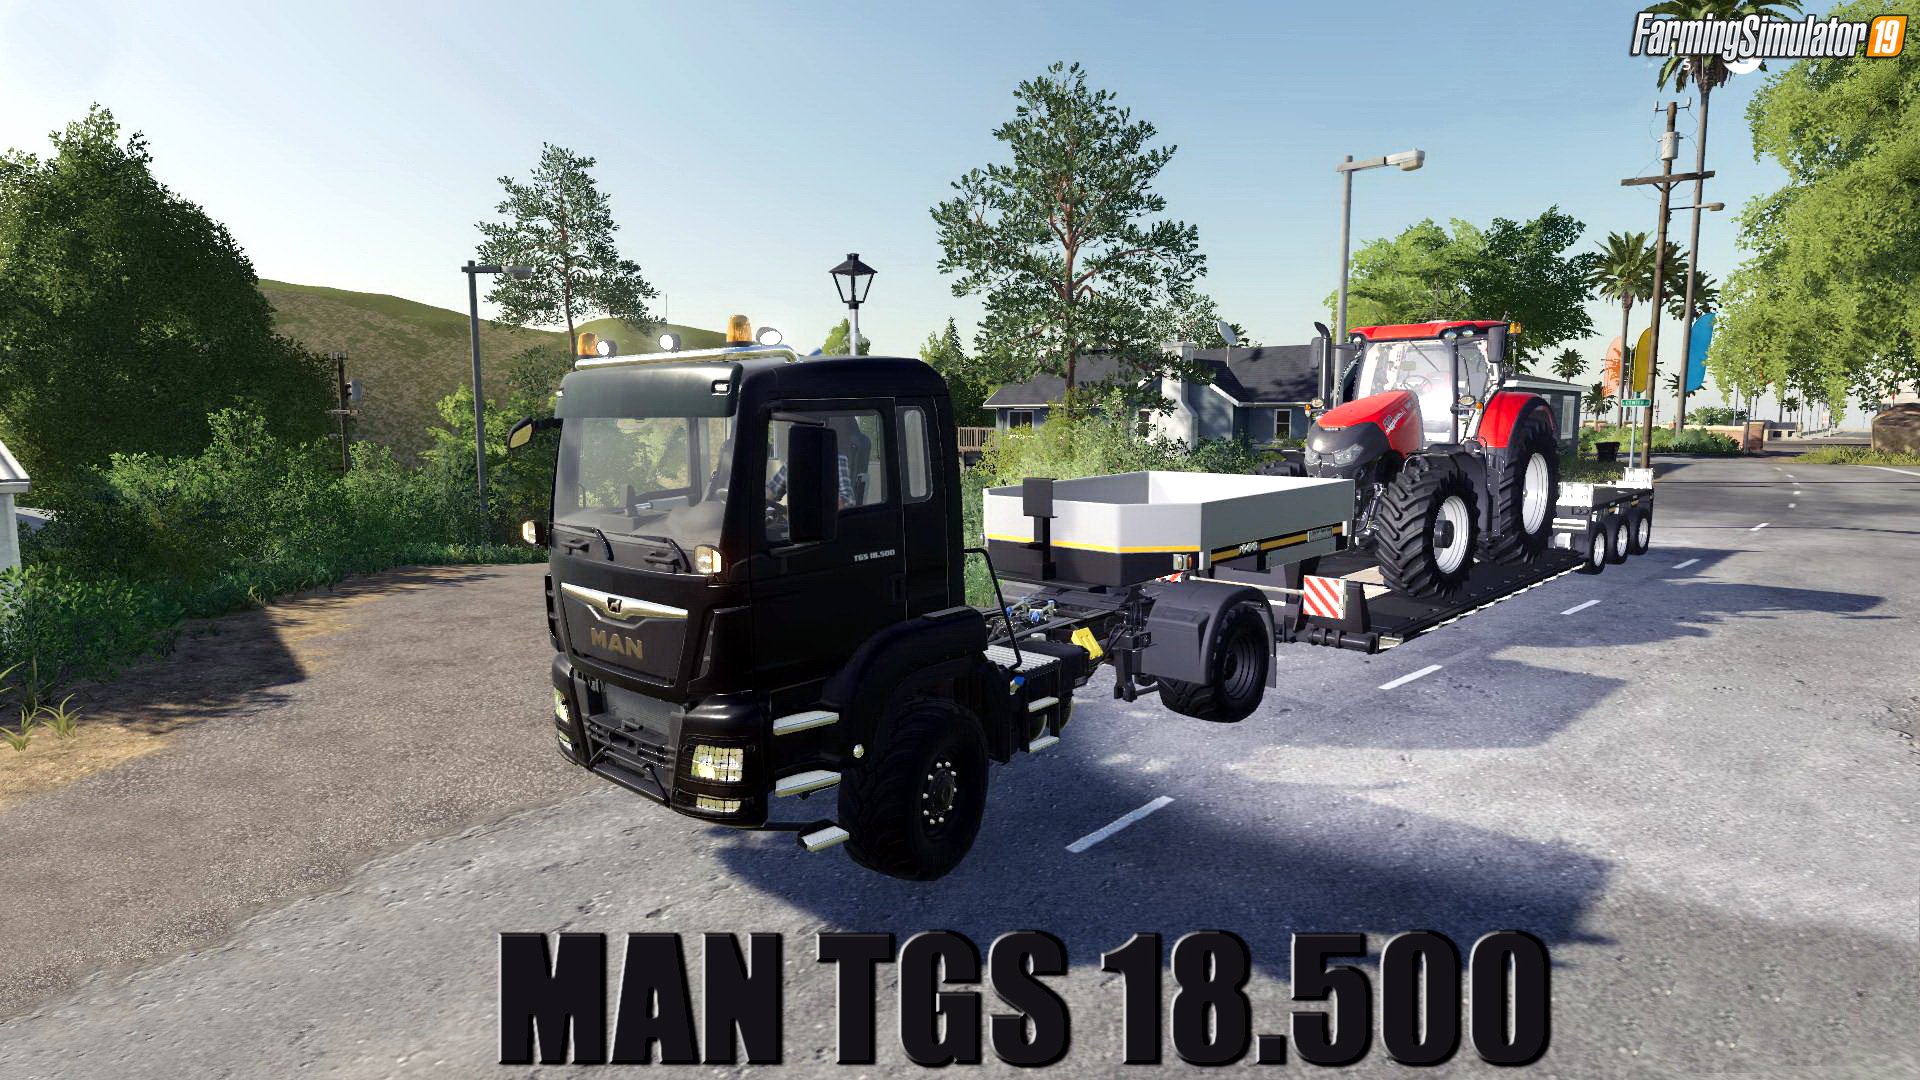 MAN TGS 18.500 v1.0.1 for FS19